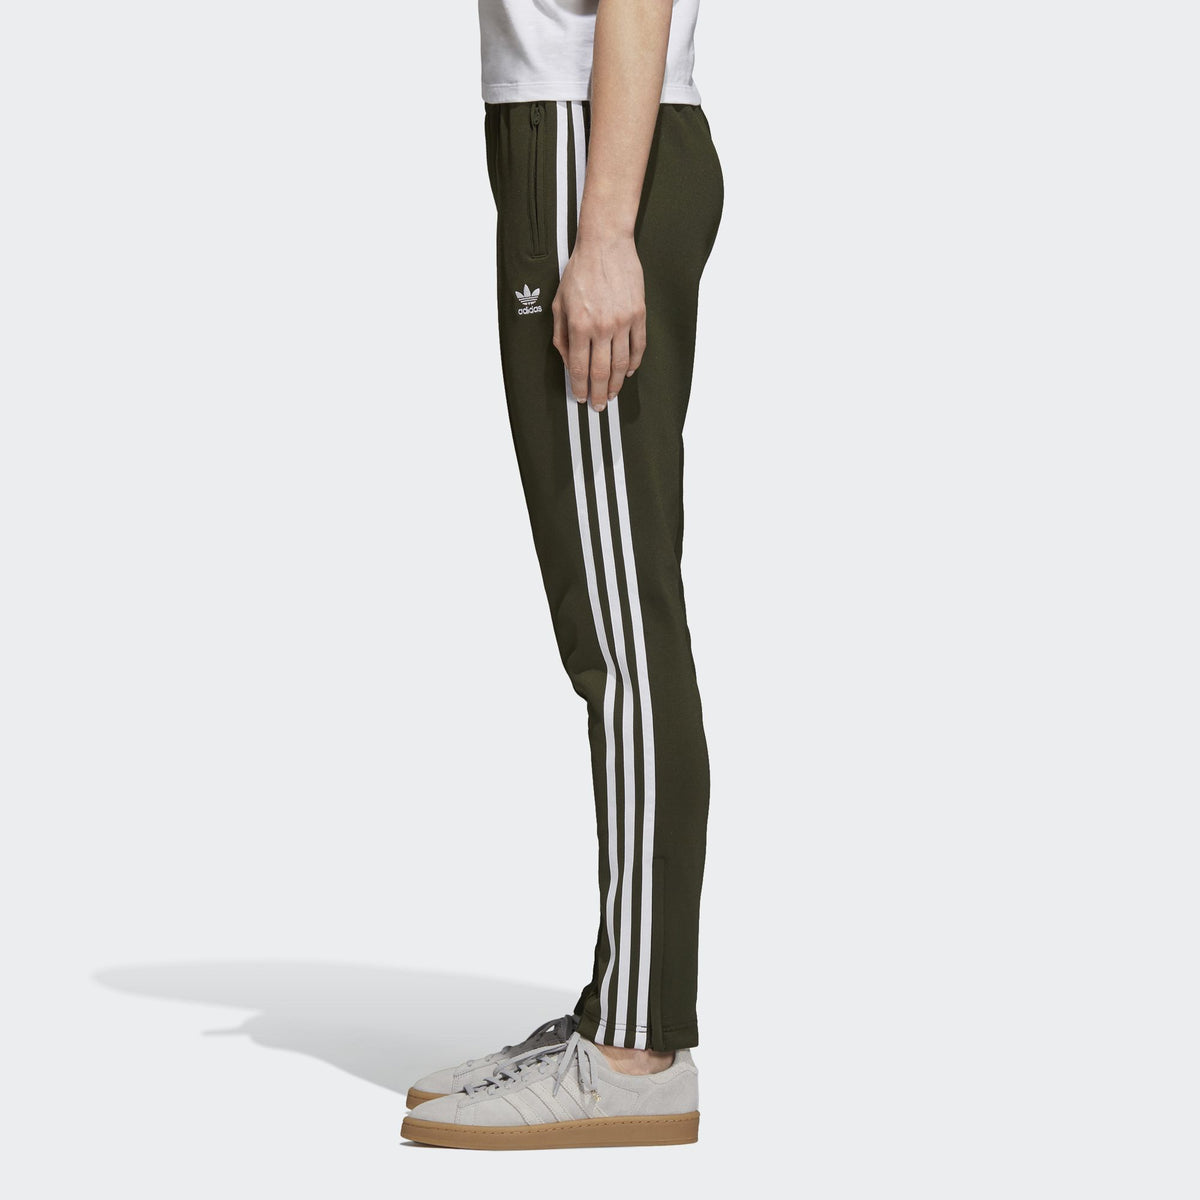 Luipaard Nationaal volkslied Bemiddelen Adidas Originals Women's Superstar Track Suit Pants Black/White